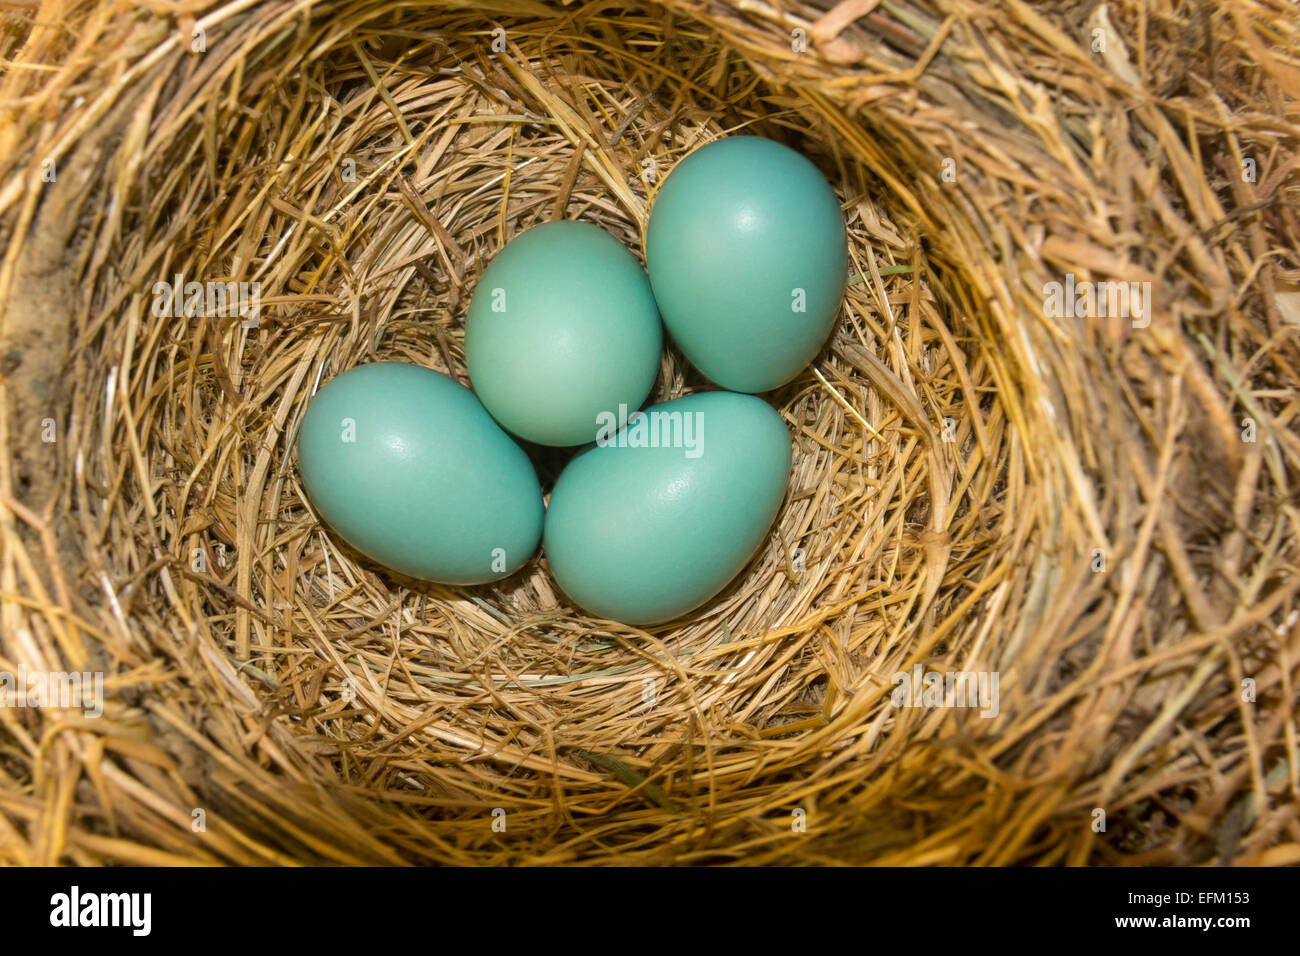 4, four, American Robin eggs, American Robin, Turdus migratorius, eggs in nest, city of Novato, Marin County, California, United States Stock Photo